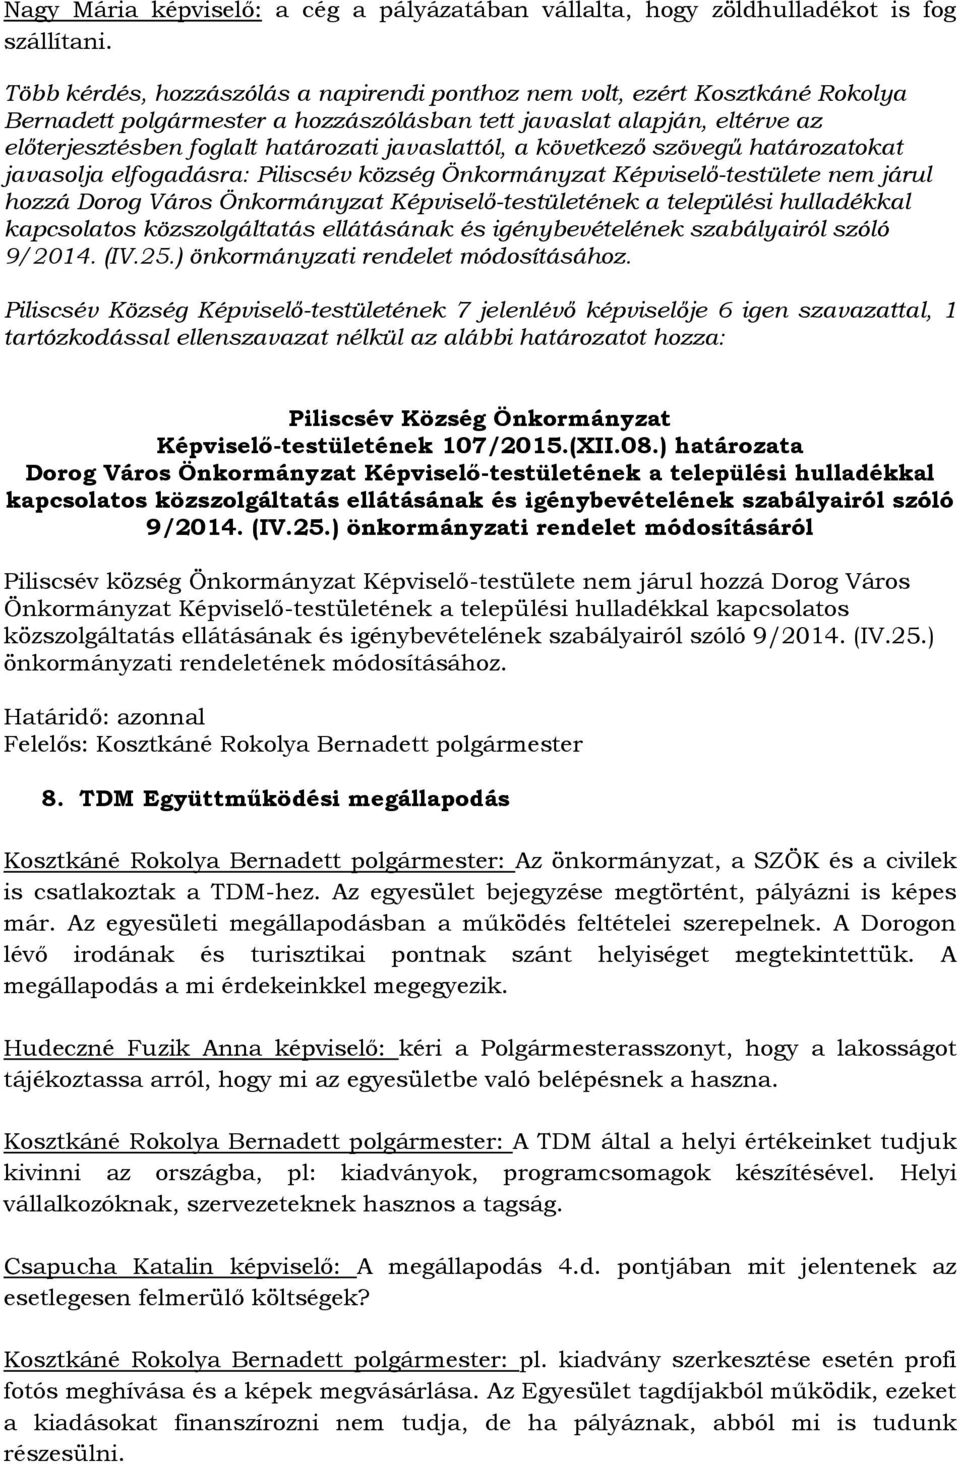 javaslattól, a következő szövegű határozatokat javasolja elfogadásra: Piliscsév község Önkormányzat Képviselő-testülete nem járul hozzá Dorog Város Önkormányzat Képviselő-testületének a települési